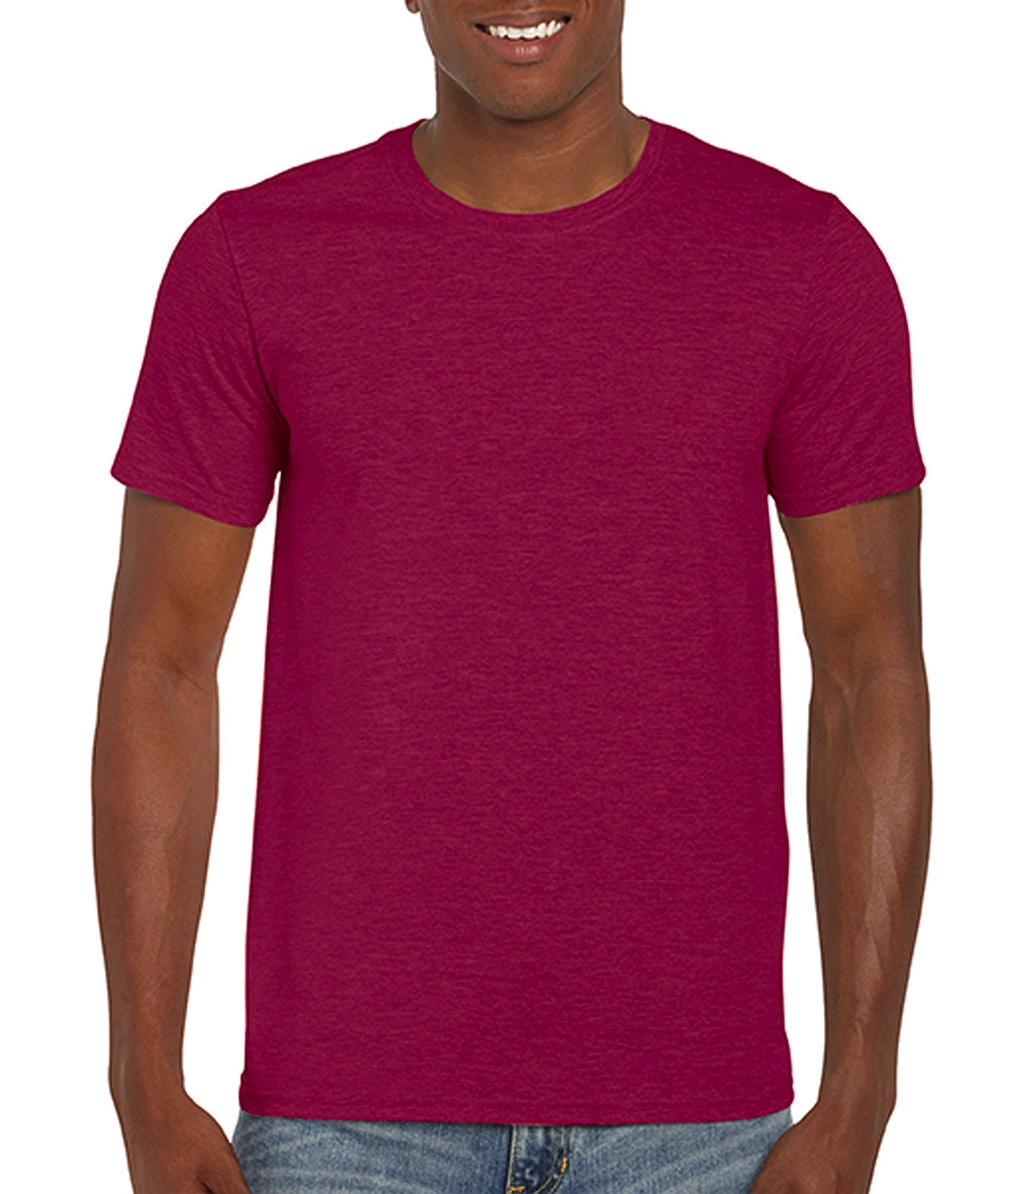 Softstyle® Ring Spun T-Shirt zum Besticken und Bedrucken in der Farbe Heather Cardinal mit Ihren Logo, Schriftzug oder Motiv.